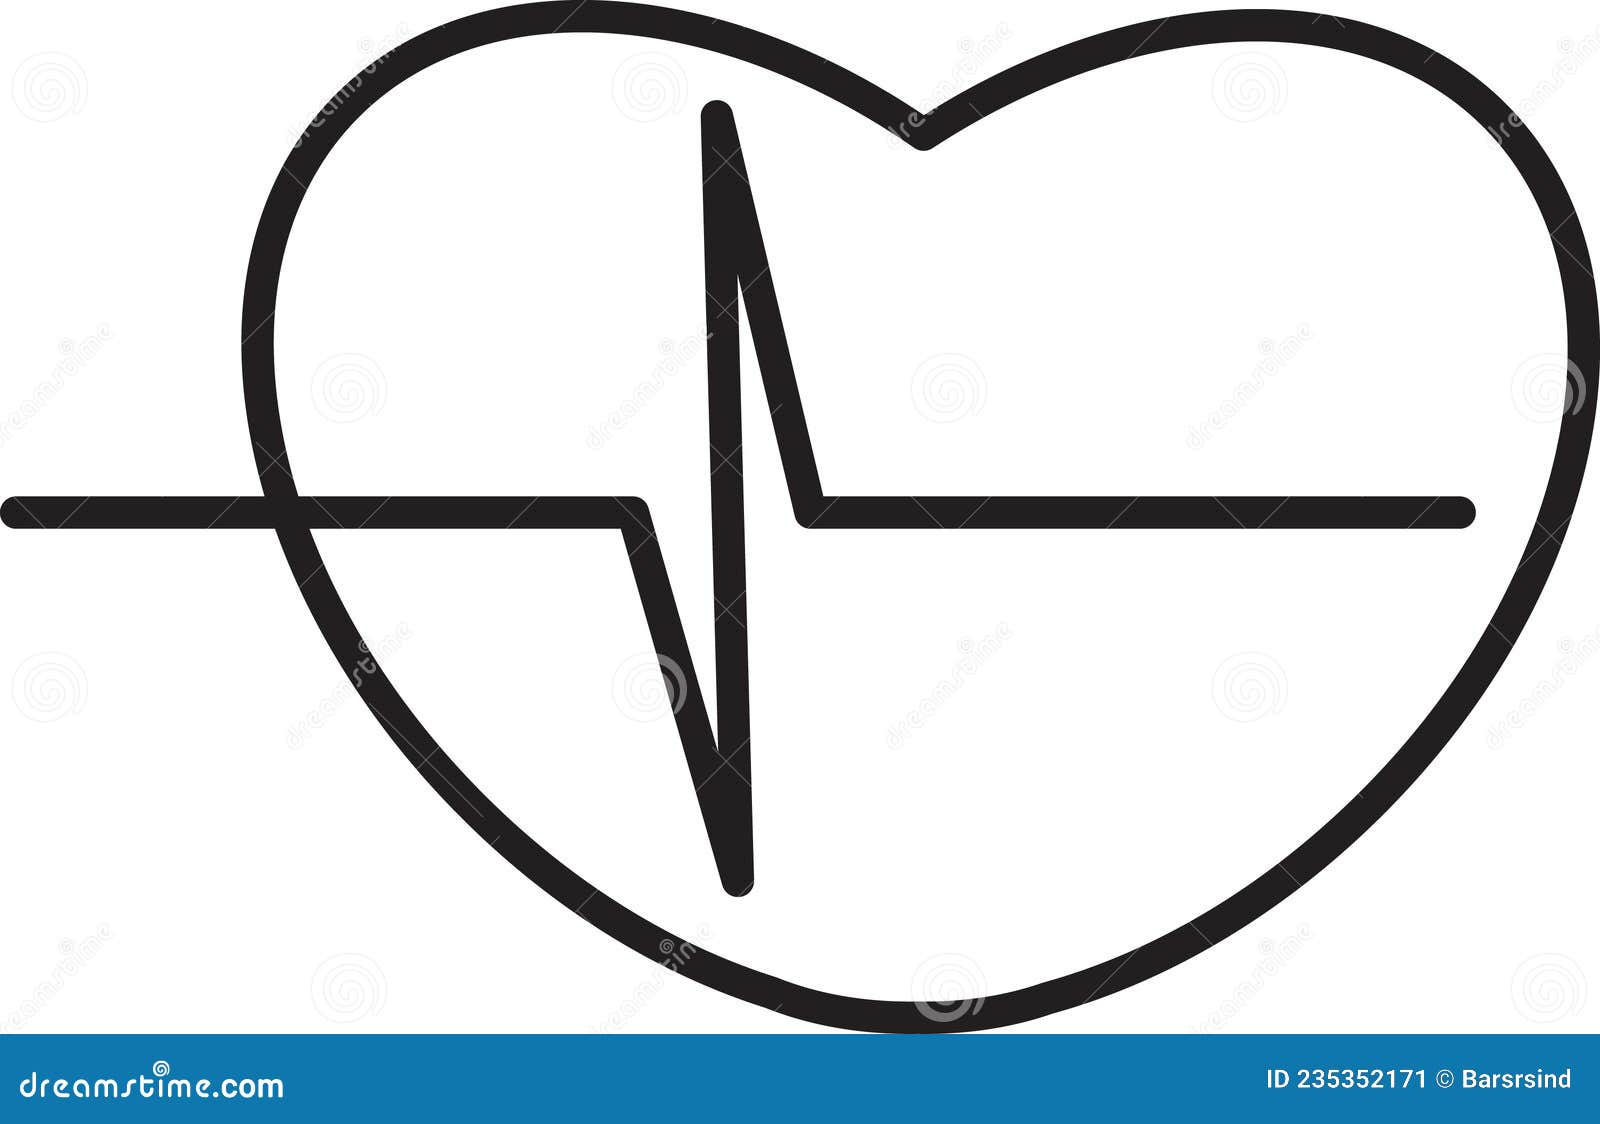 Heart Pulse Human Medicine Cardiogram Exam Vector Stock Vector ...